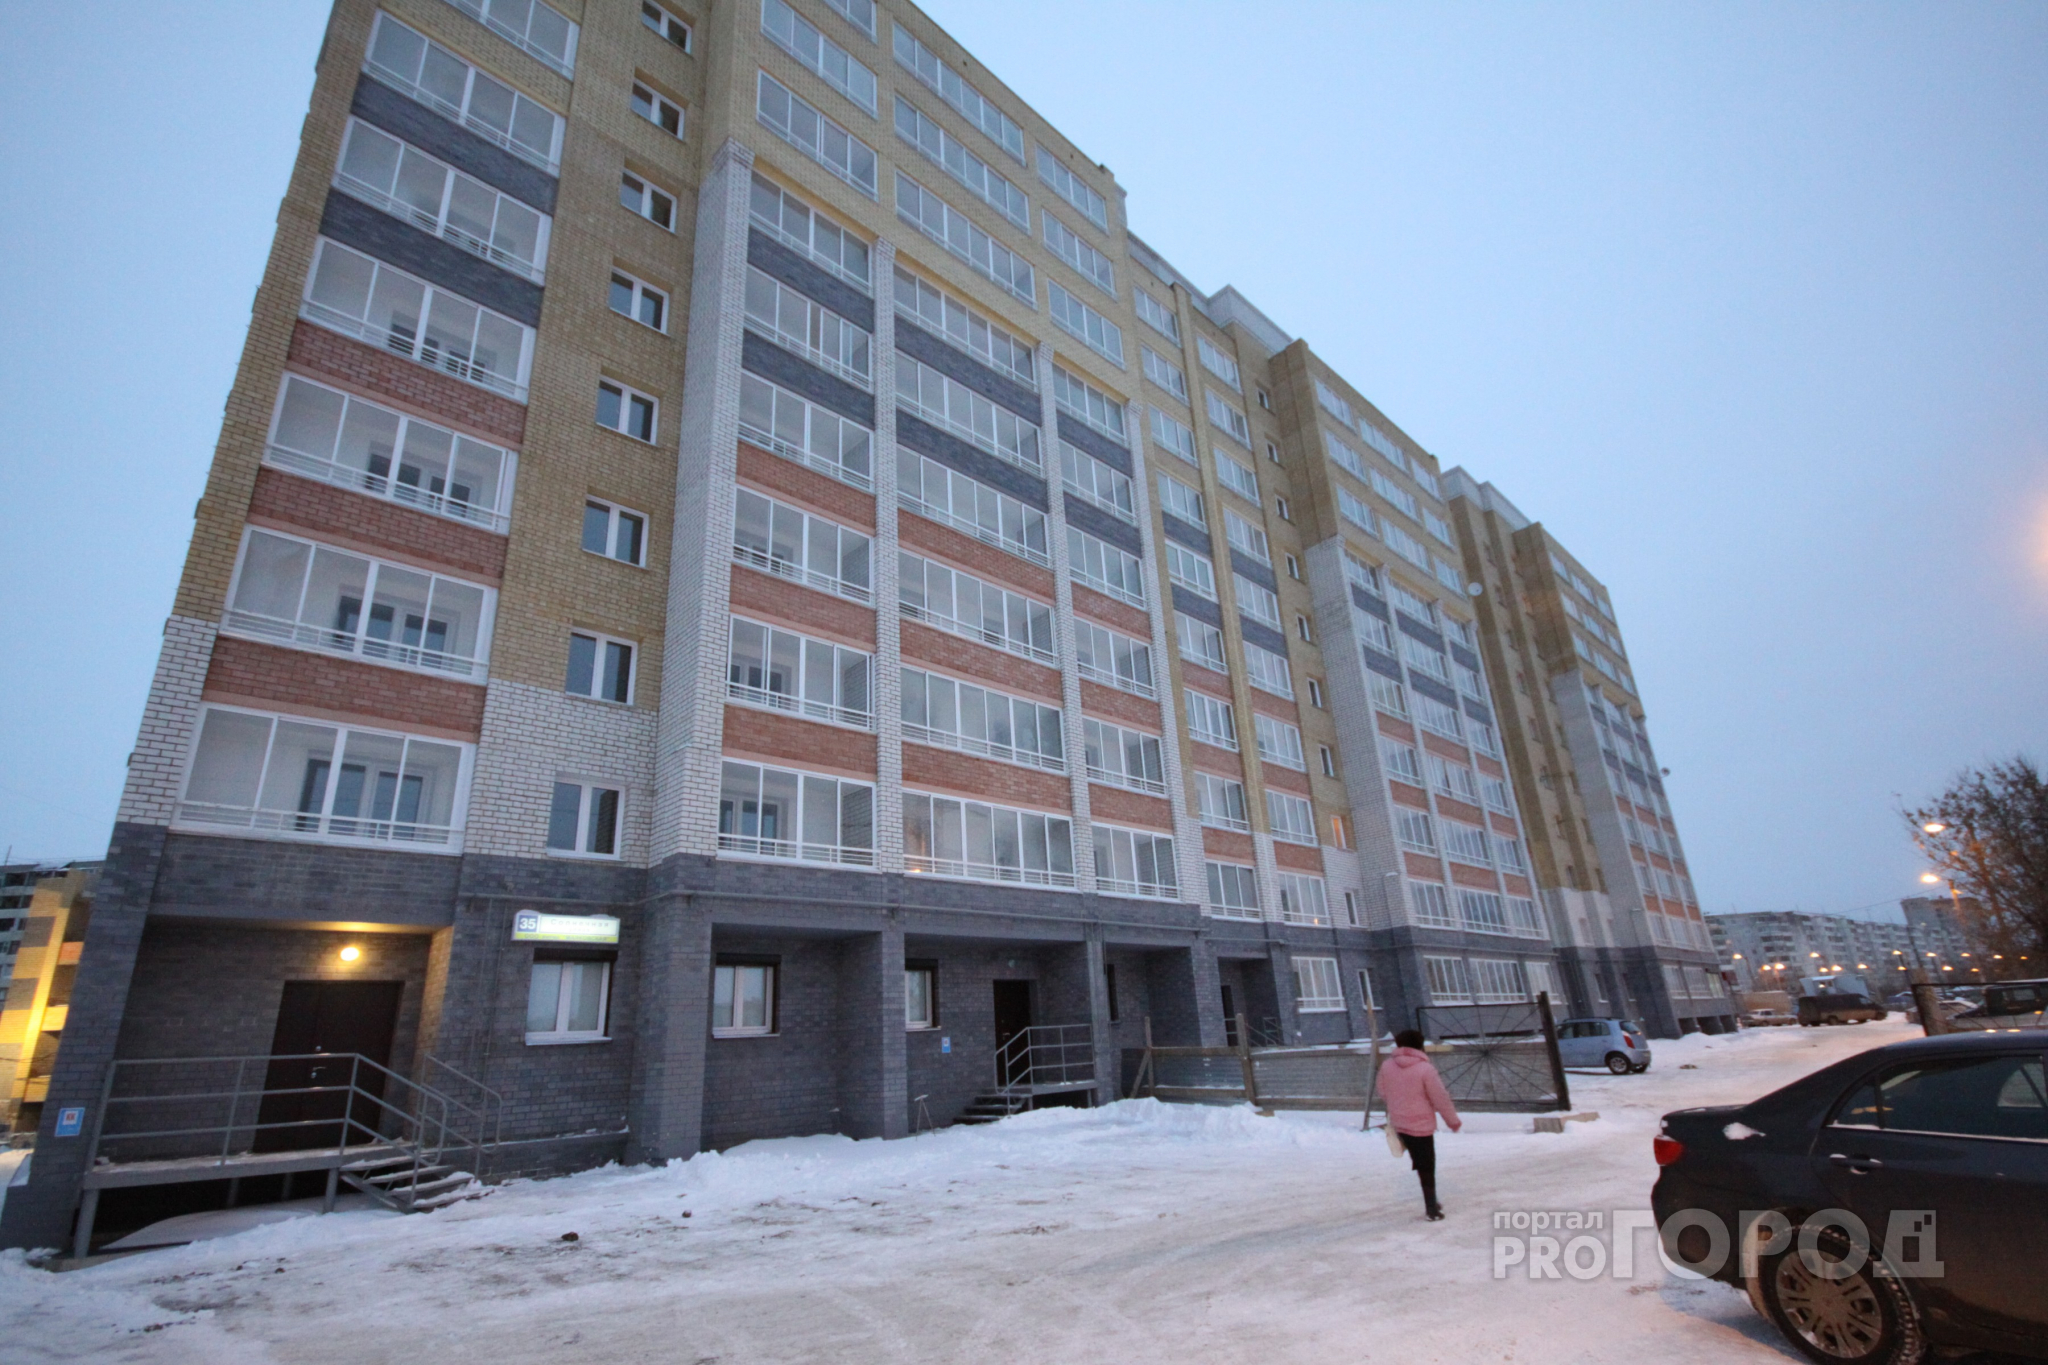 На улице Комбайновой человек упал с девятого этажа